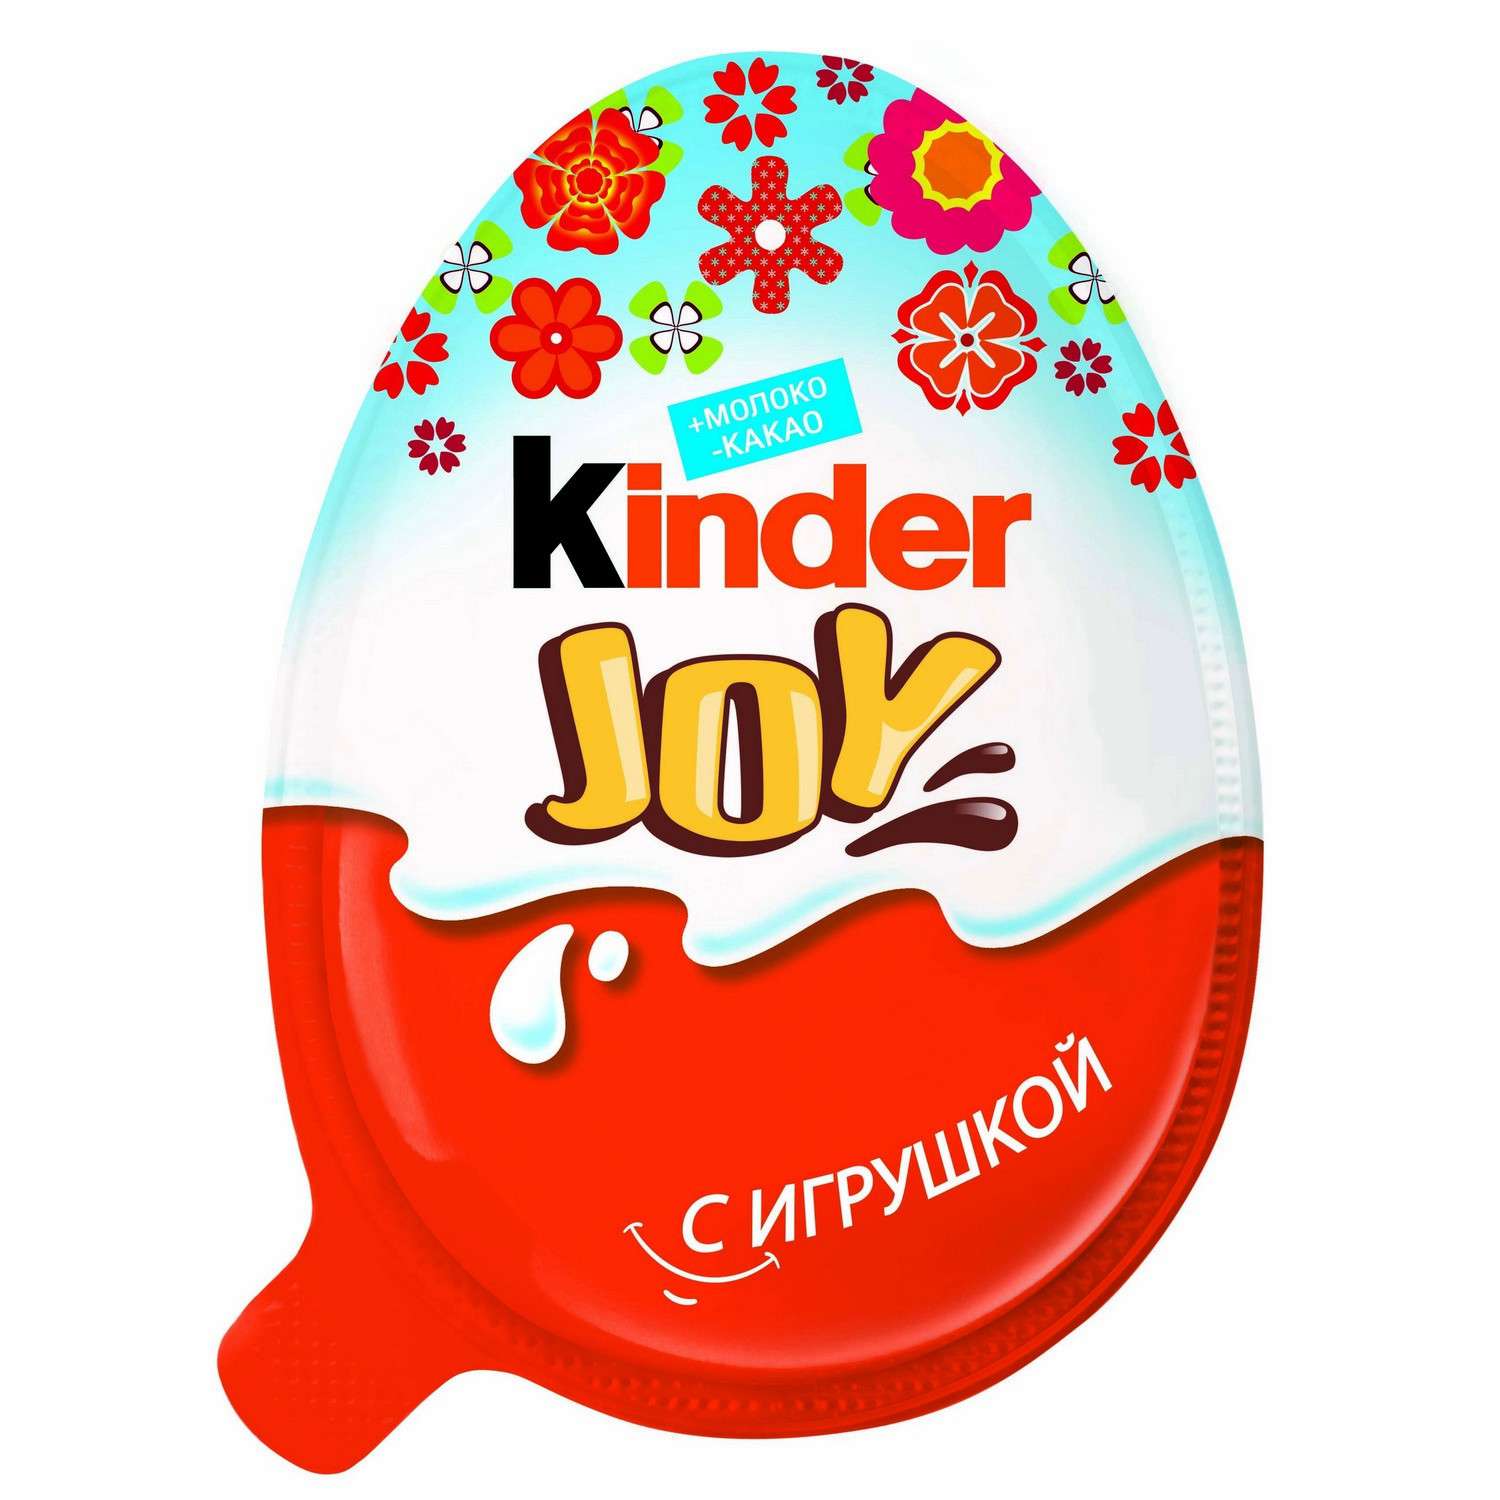 Шоколадное яйцо Kinder Kinder Joy Весна 21г в ассортименте - фото 5